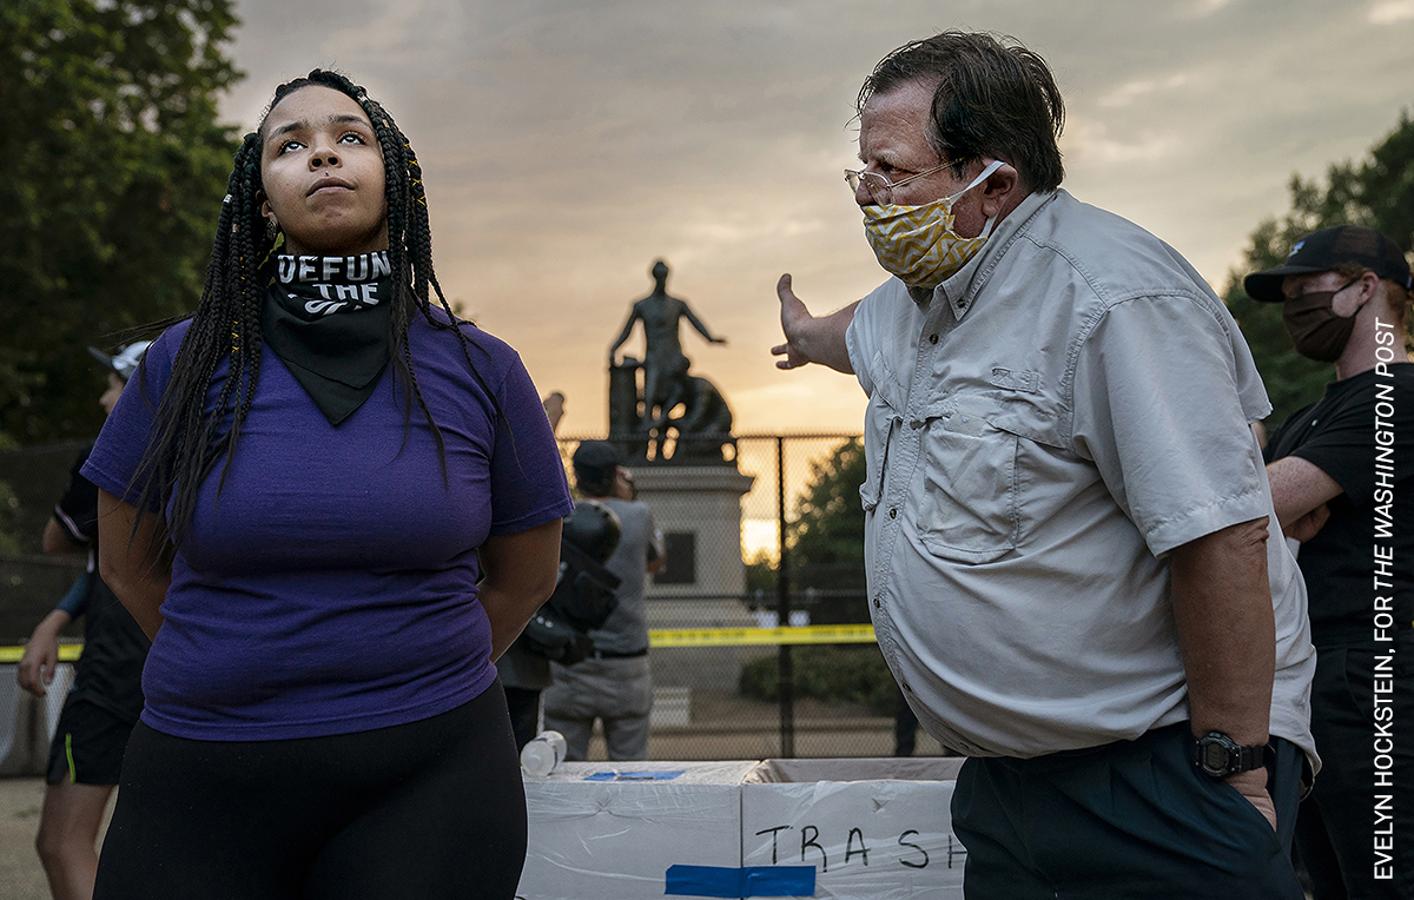 (Imagen nominada a 'Mejor fotografía del año') Anais, de 26 años, discute sobre la eliminación del Monumento a la Emancipación con un hombre que desea conservarlo. En Lincoln Park, Washington, en el marco de las protestas impulsadas por el movimiento 'Black Lives Matter'. 